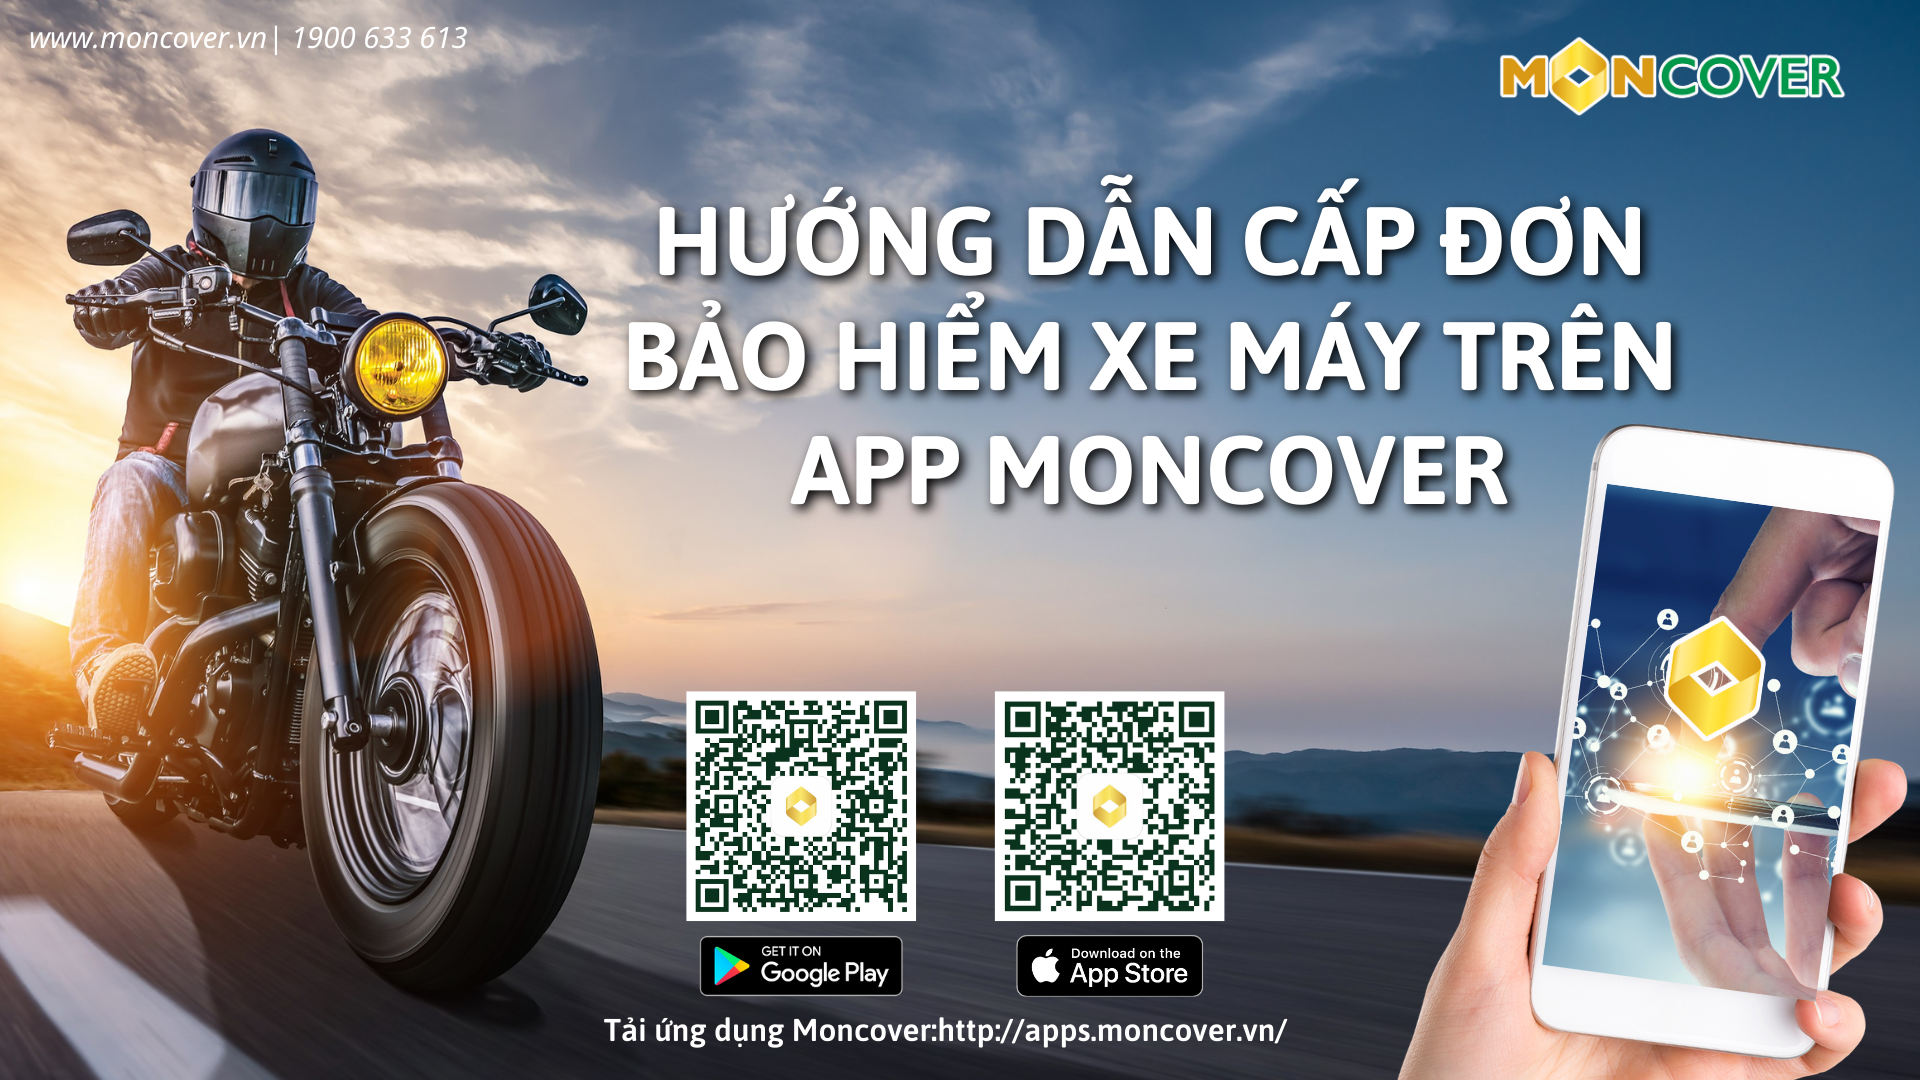 Hướng dẫn bán bảo hiểm xe máy trên app Moncover